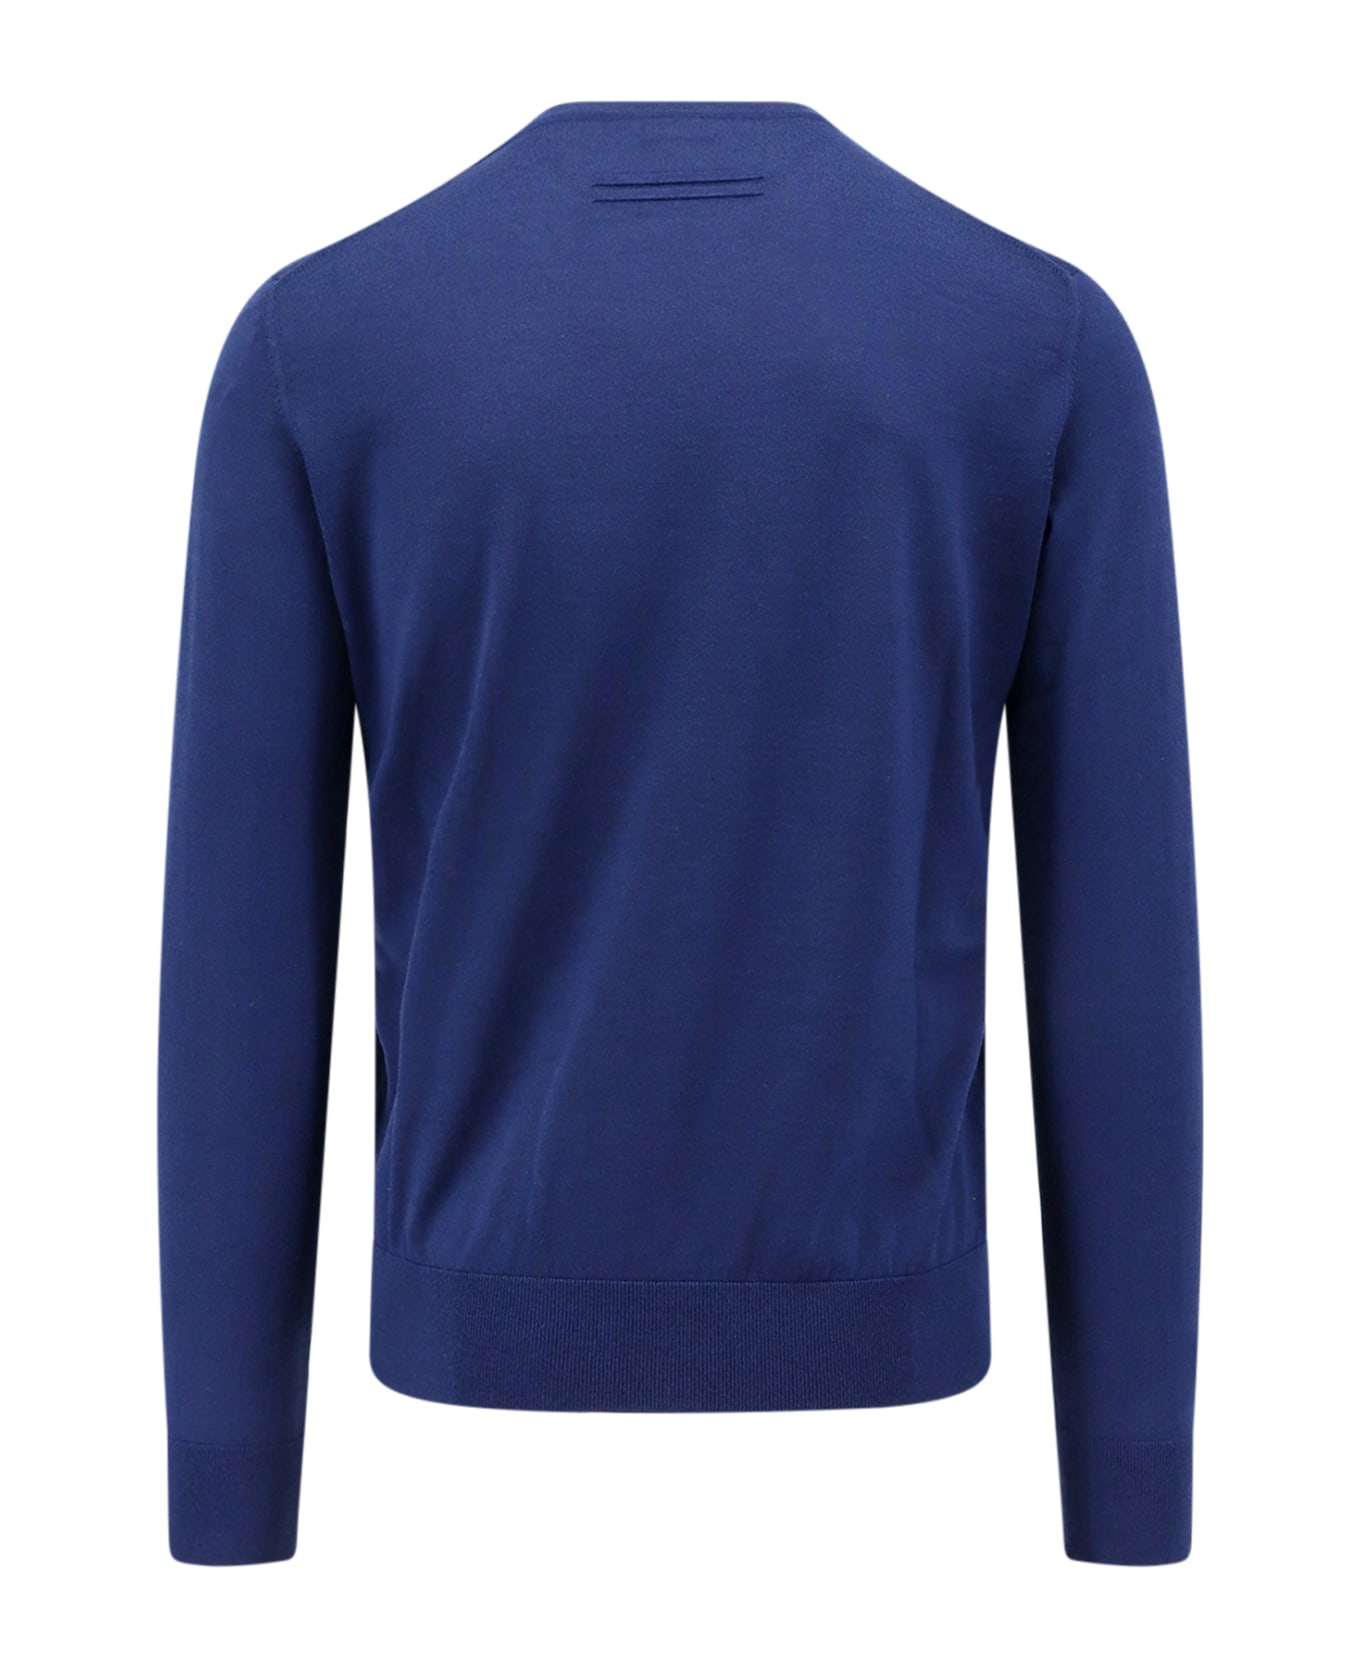 Zegna Sweater - Blue ニットウェア